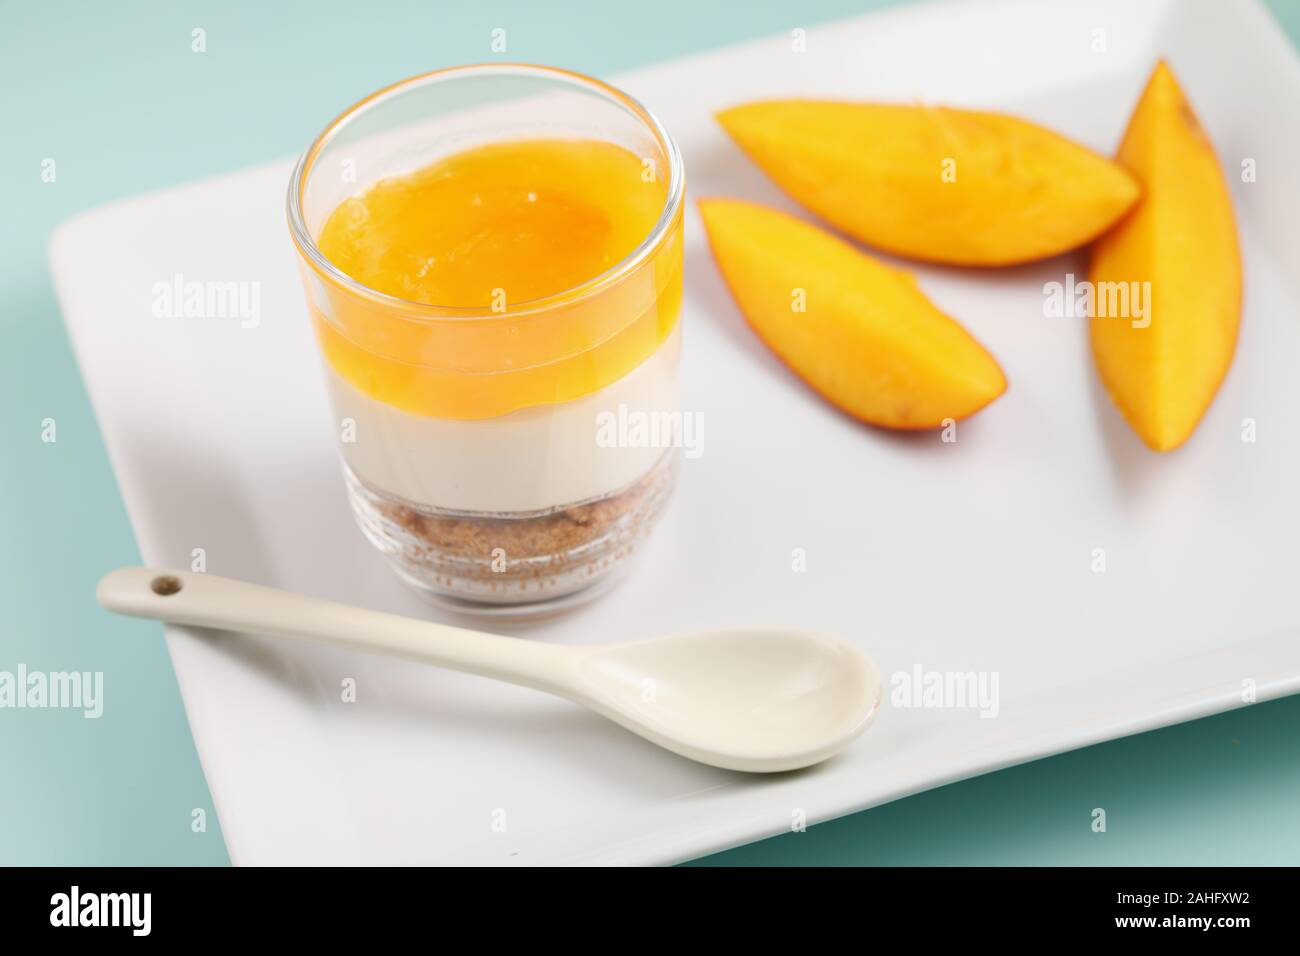 Mangue et crème dessert bagatelle libre avec des tranches de mangues Banque D'Images